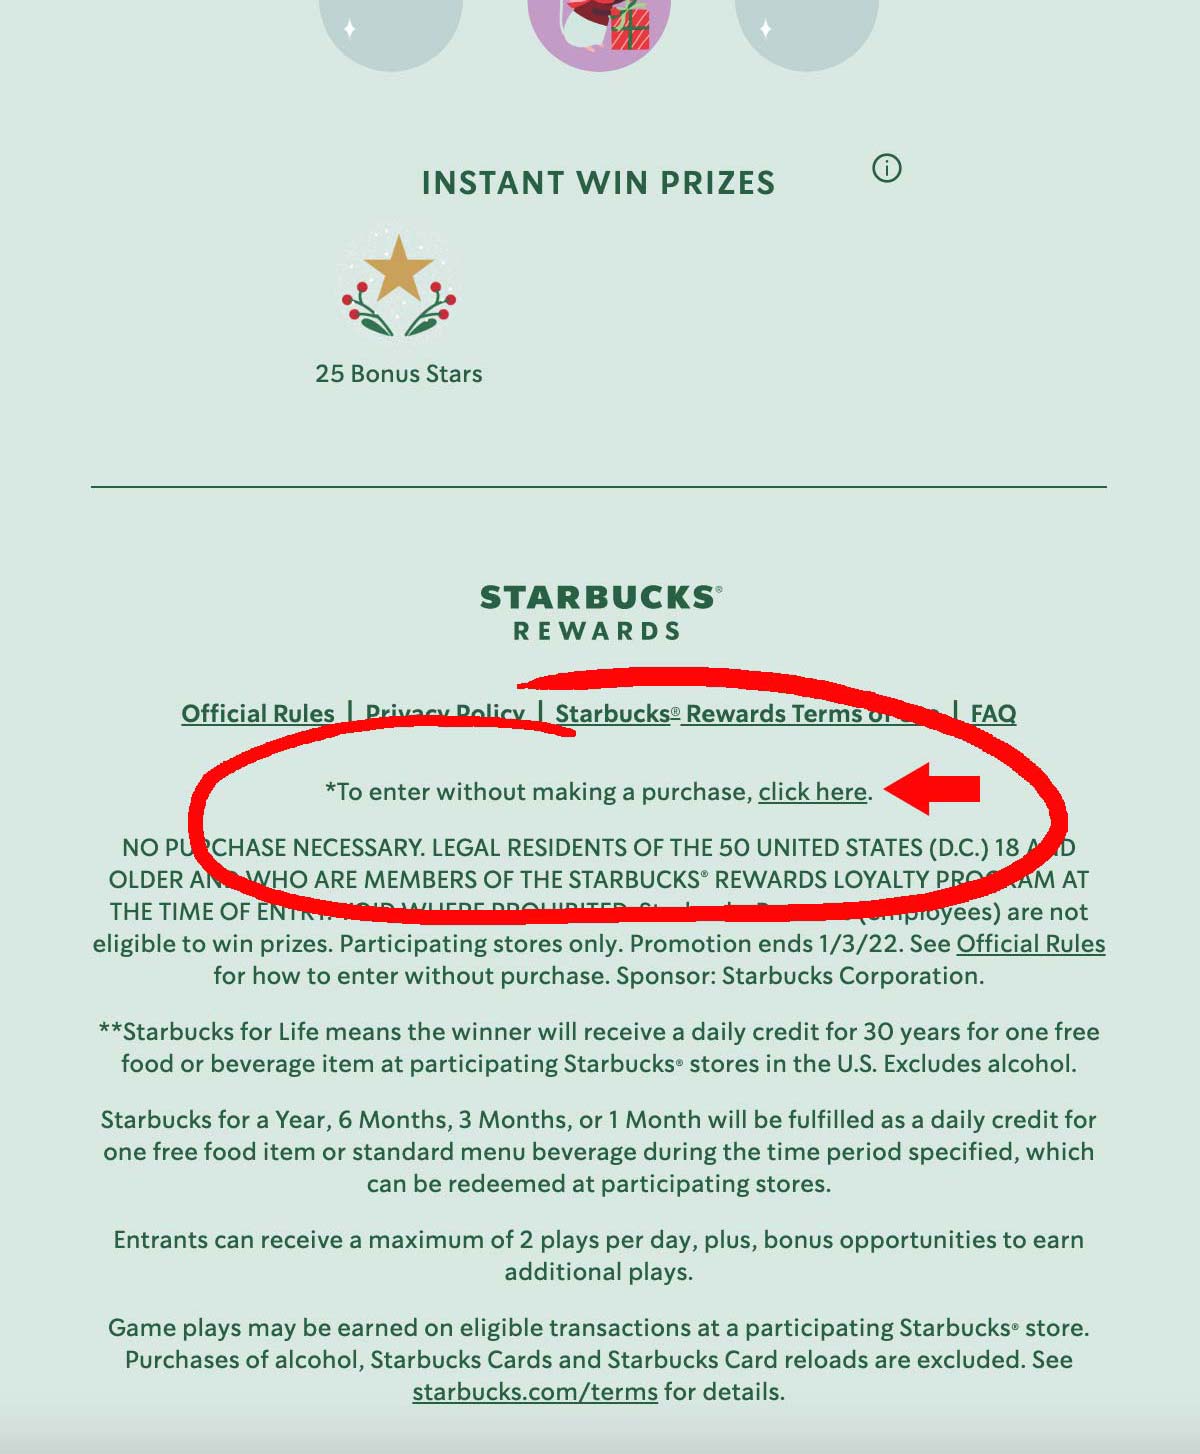 Starbucks for Life spel met hoogtepunt om te laten zien waar je gratis gameplay kunt krijgen.